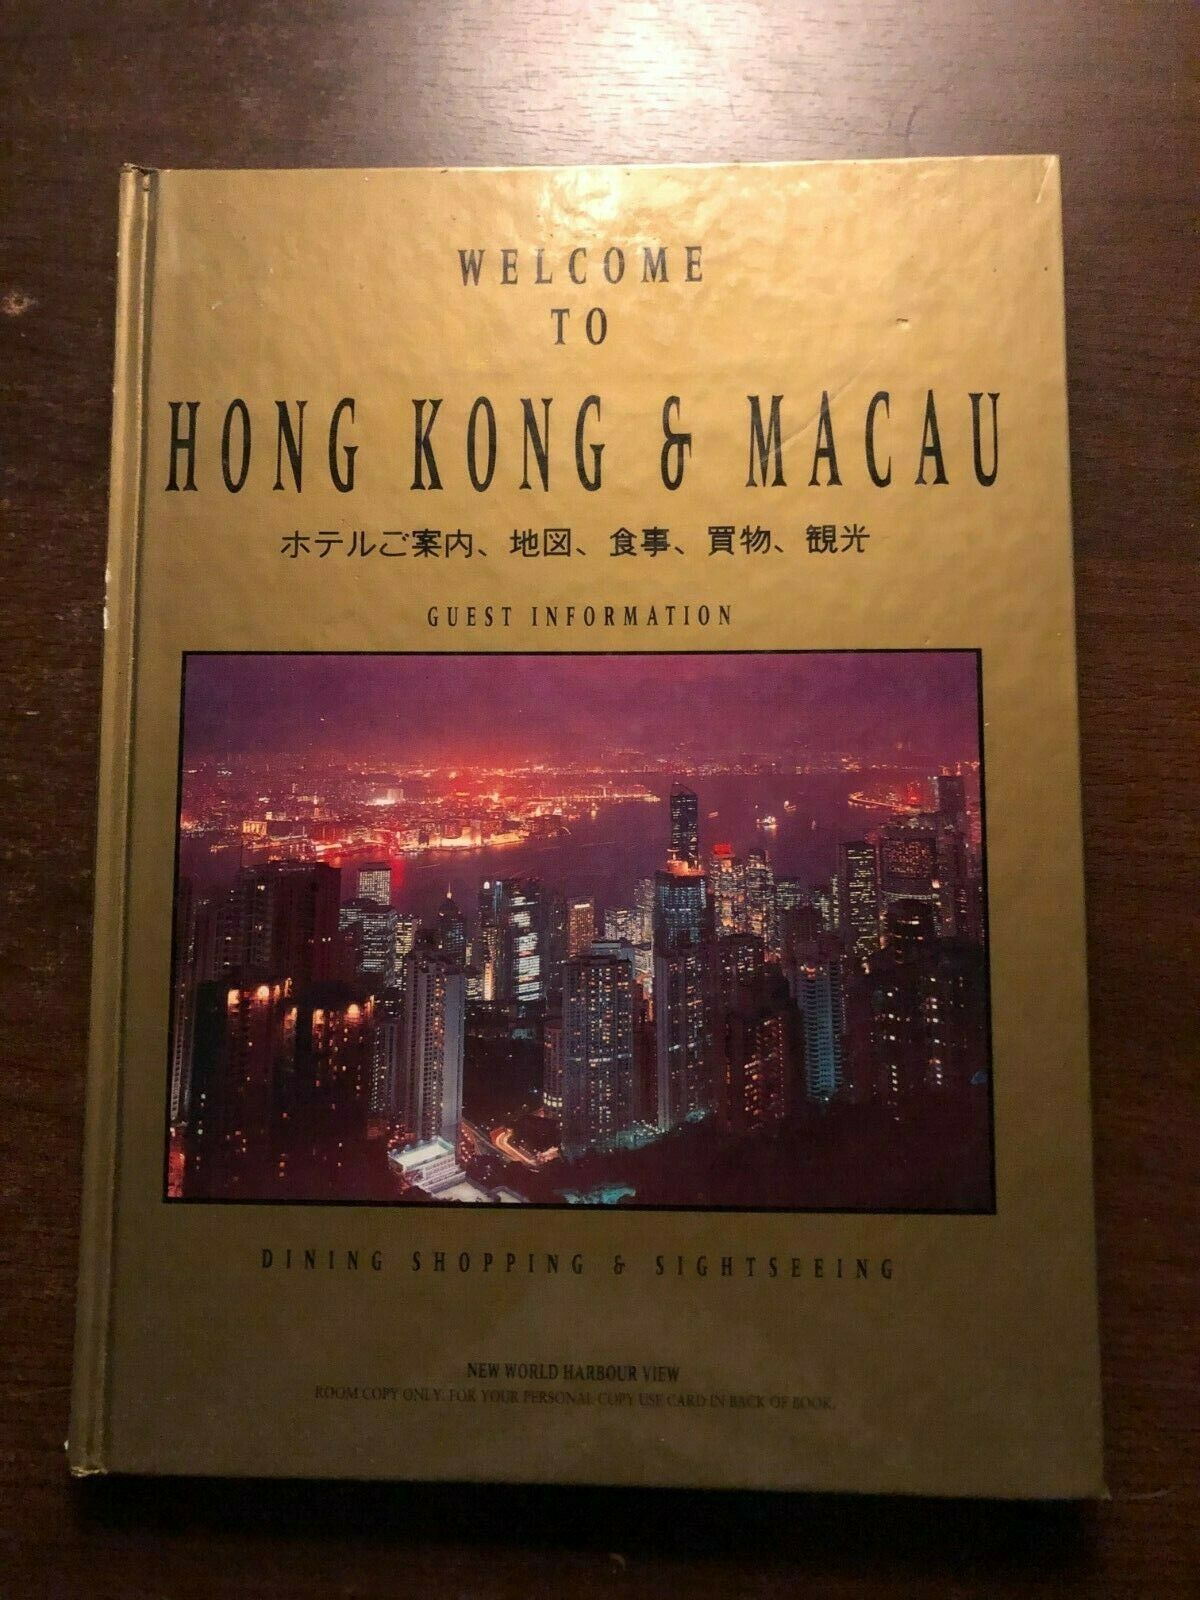 WELCOME TO HONG KONG & MACAU - GUEST INFORMATION